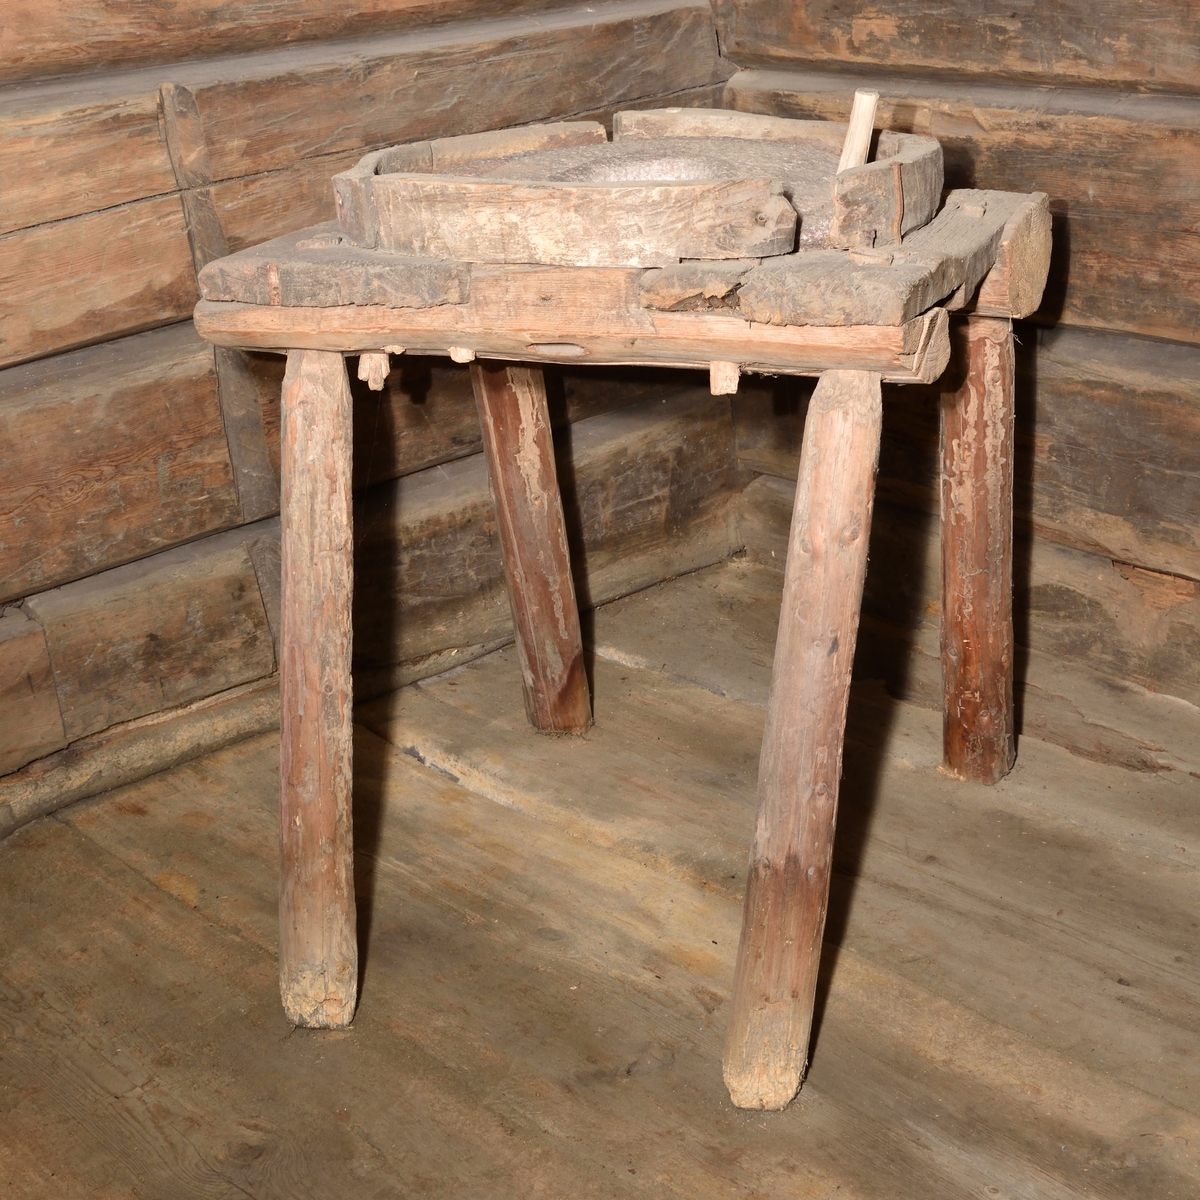 Handkvarn tillverkat i trä och sten. Kvarnen utgörs av rund sten med runt hål mitt i, samt med ett draghandtag i trä. Stenen är placerad i en rund ram ovanpå en fyrbent fotställning. Fotställningen med enkla, lätt snedställda ben. Ram och fotställning av trä.